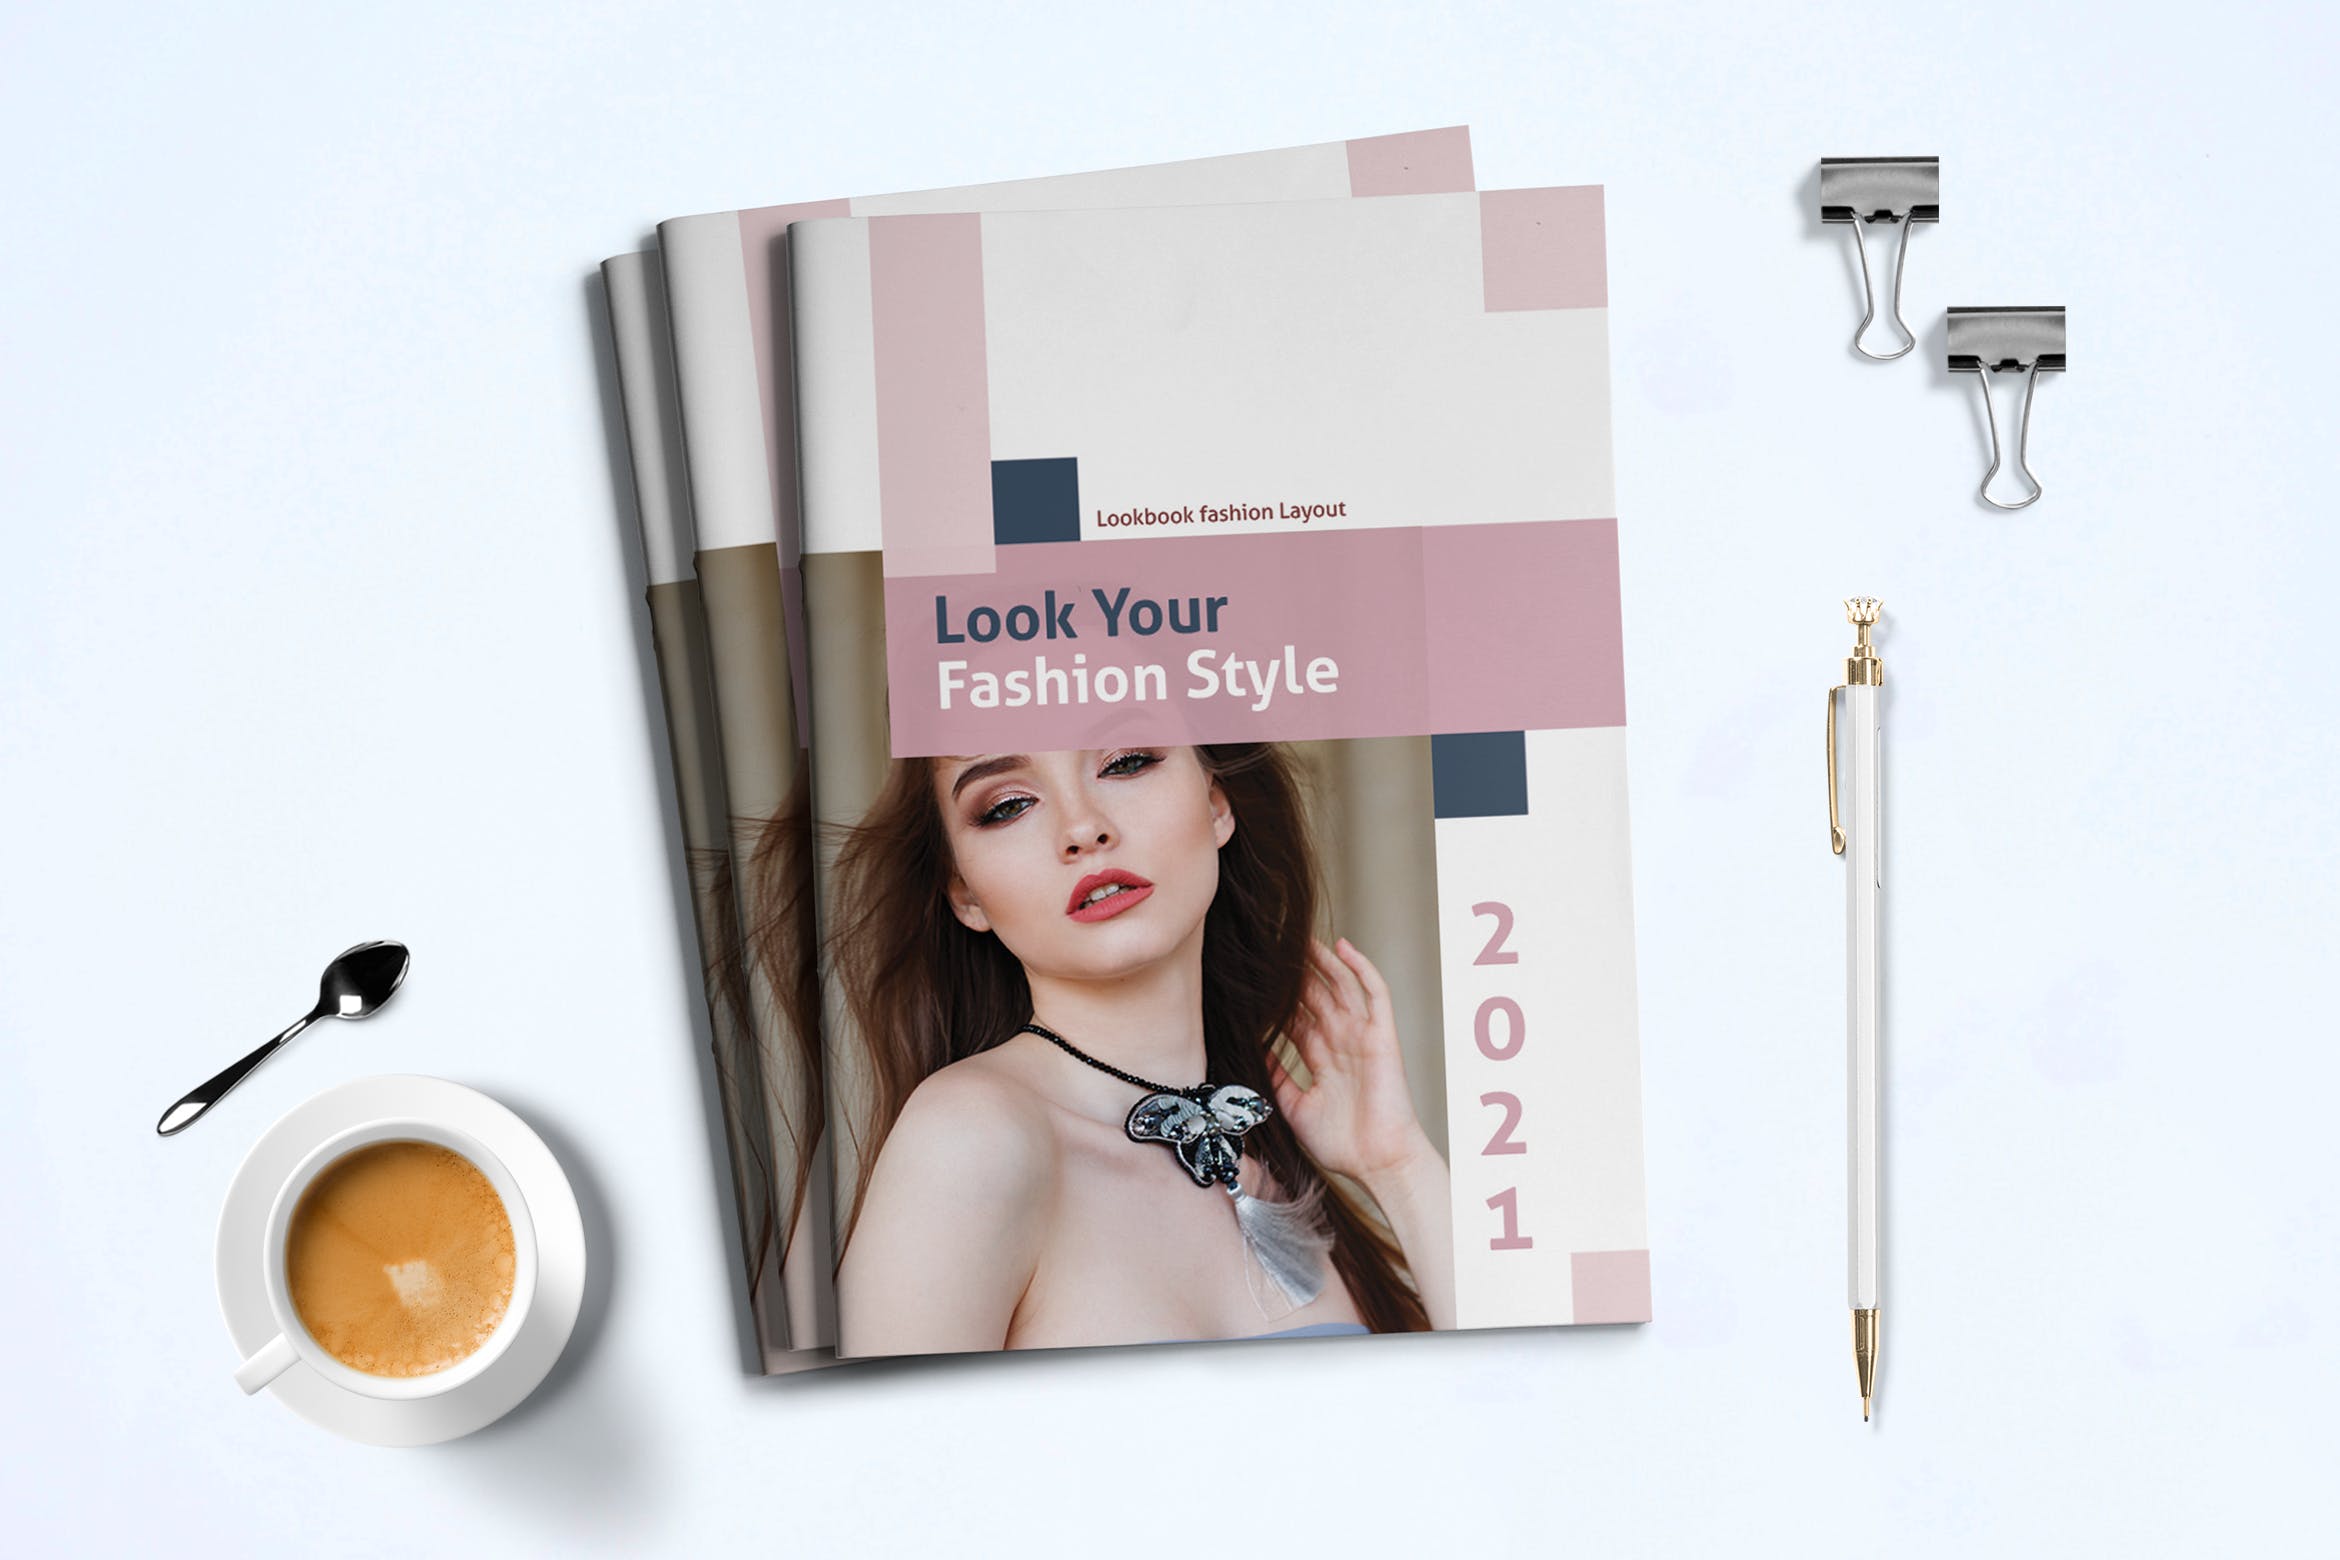 女性时尚服饰产品画册第一素材精选Lookbook设计模板 Fashion Lookbook Template插图